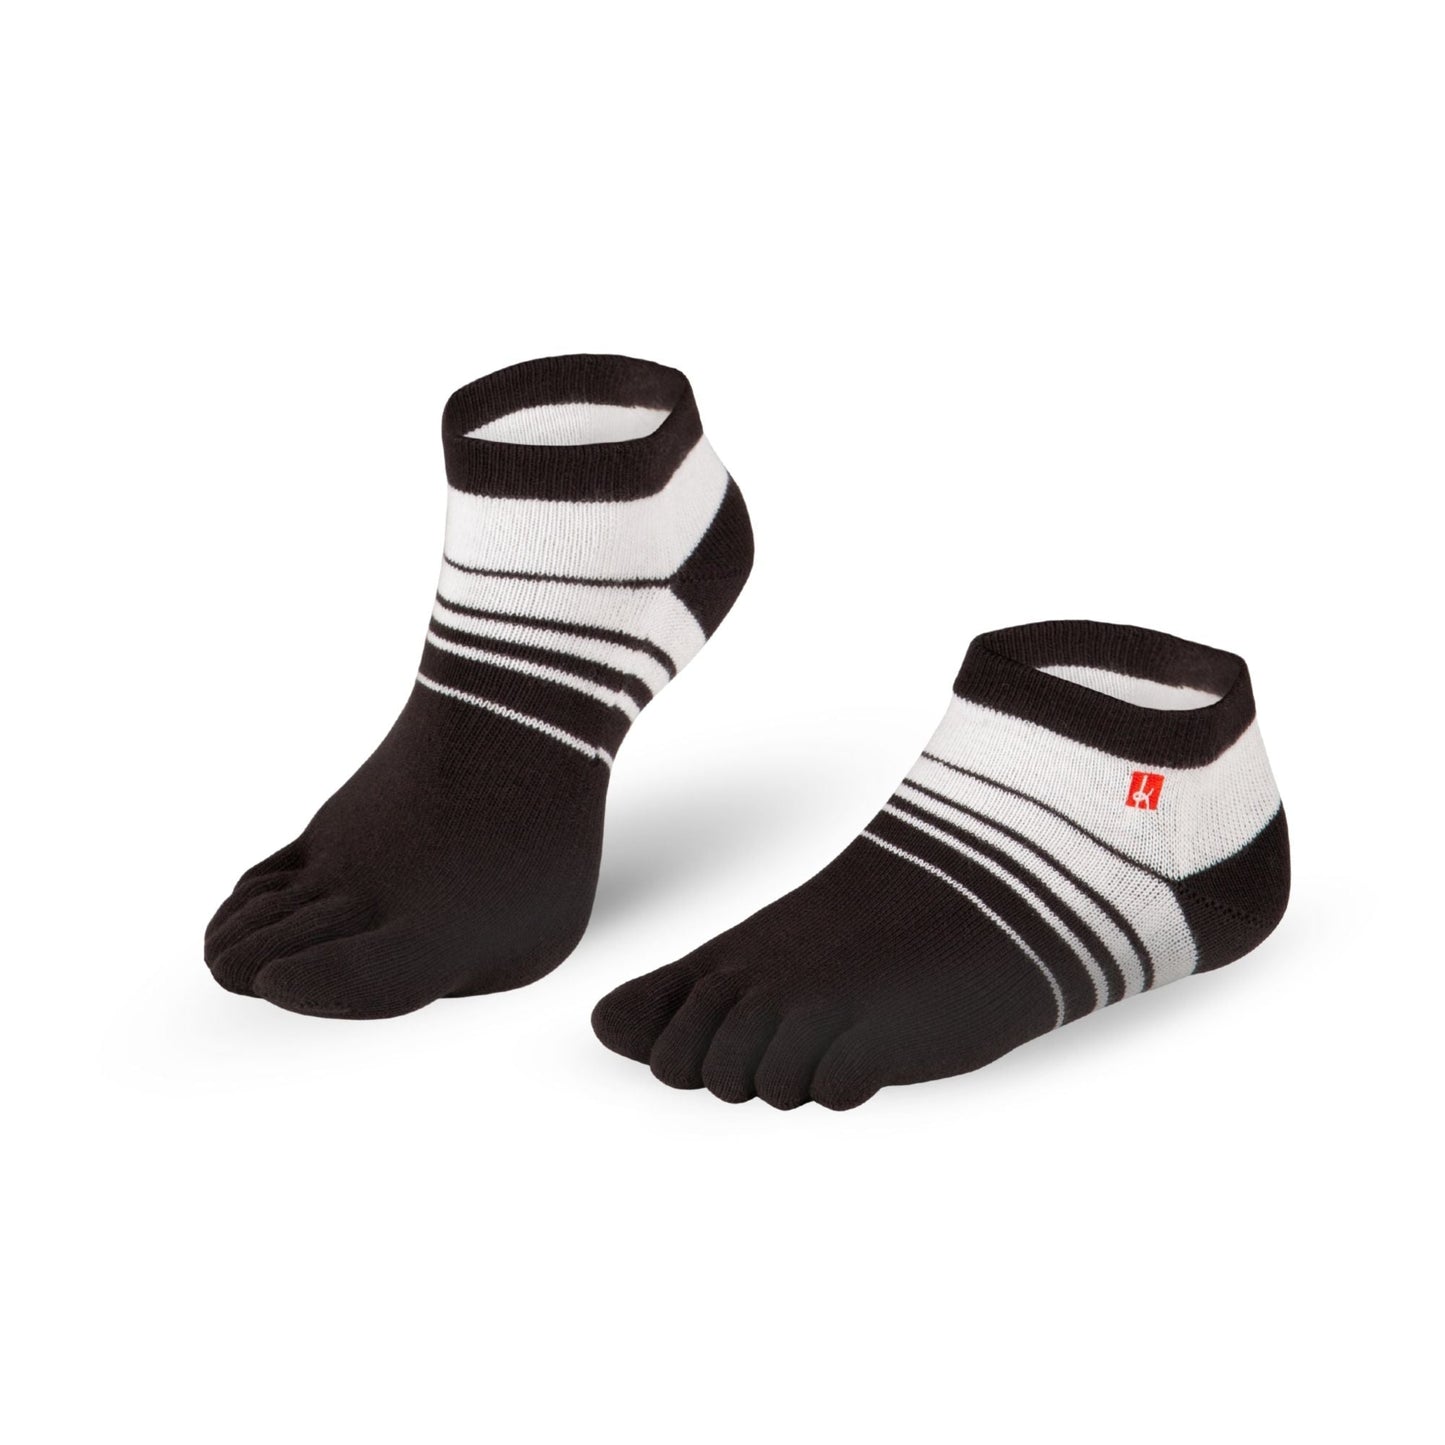 Knitido Track & Trail Spins barfods ankle tåsokker til kvinder og mænd i farven black/white, par